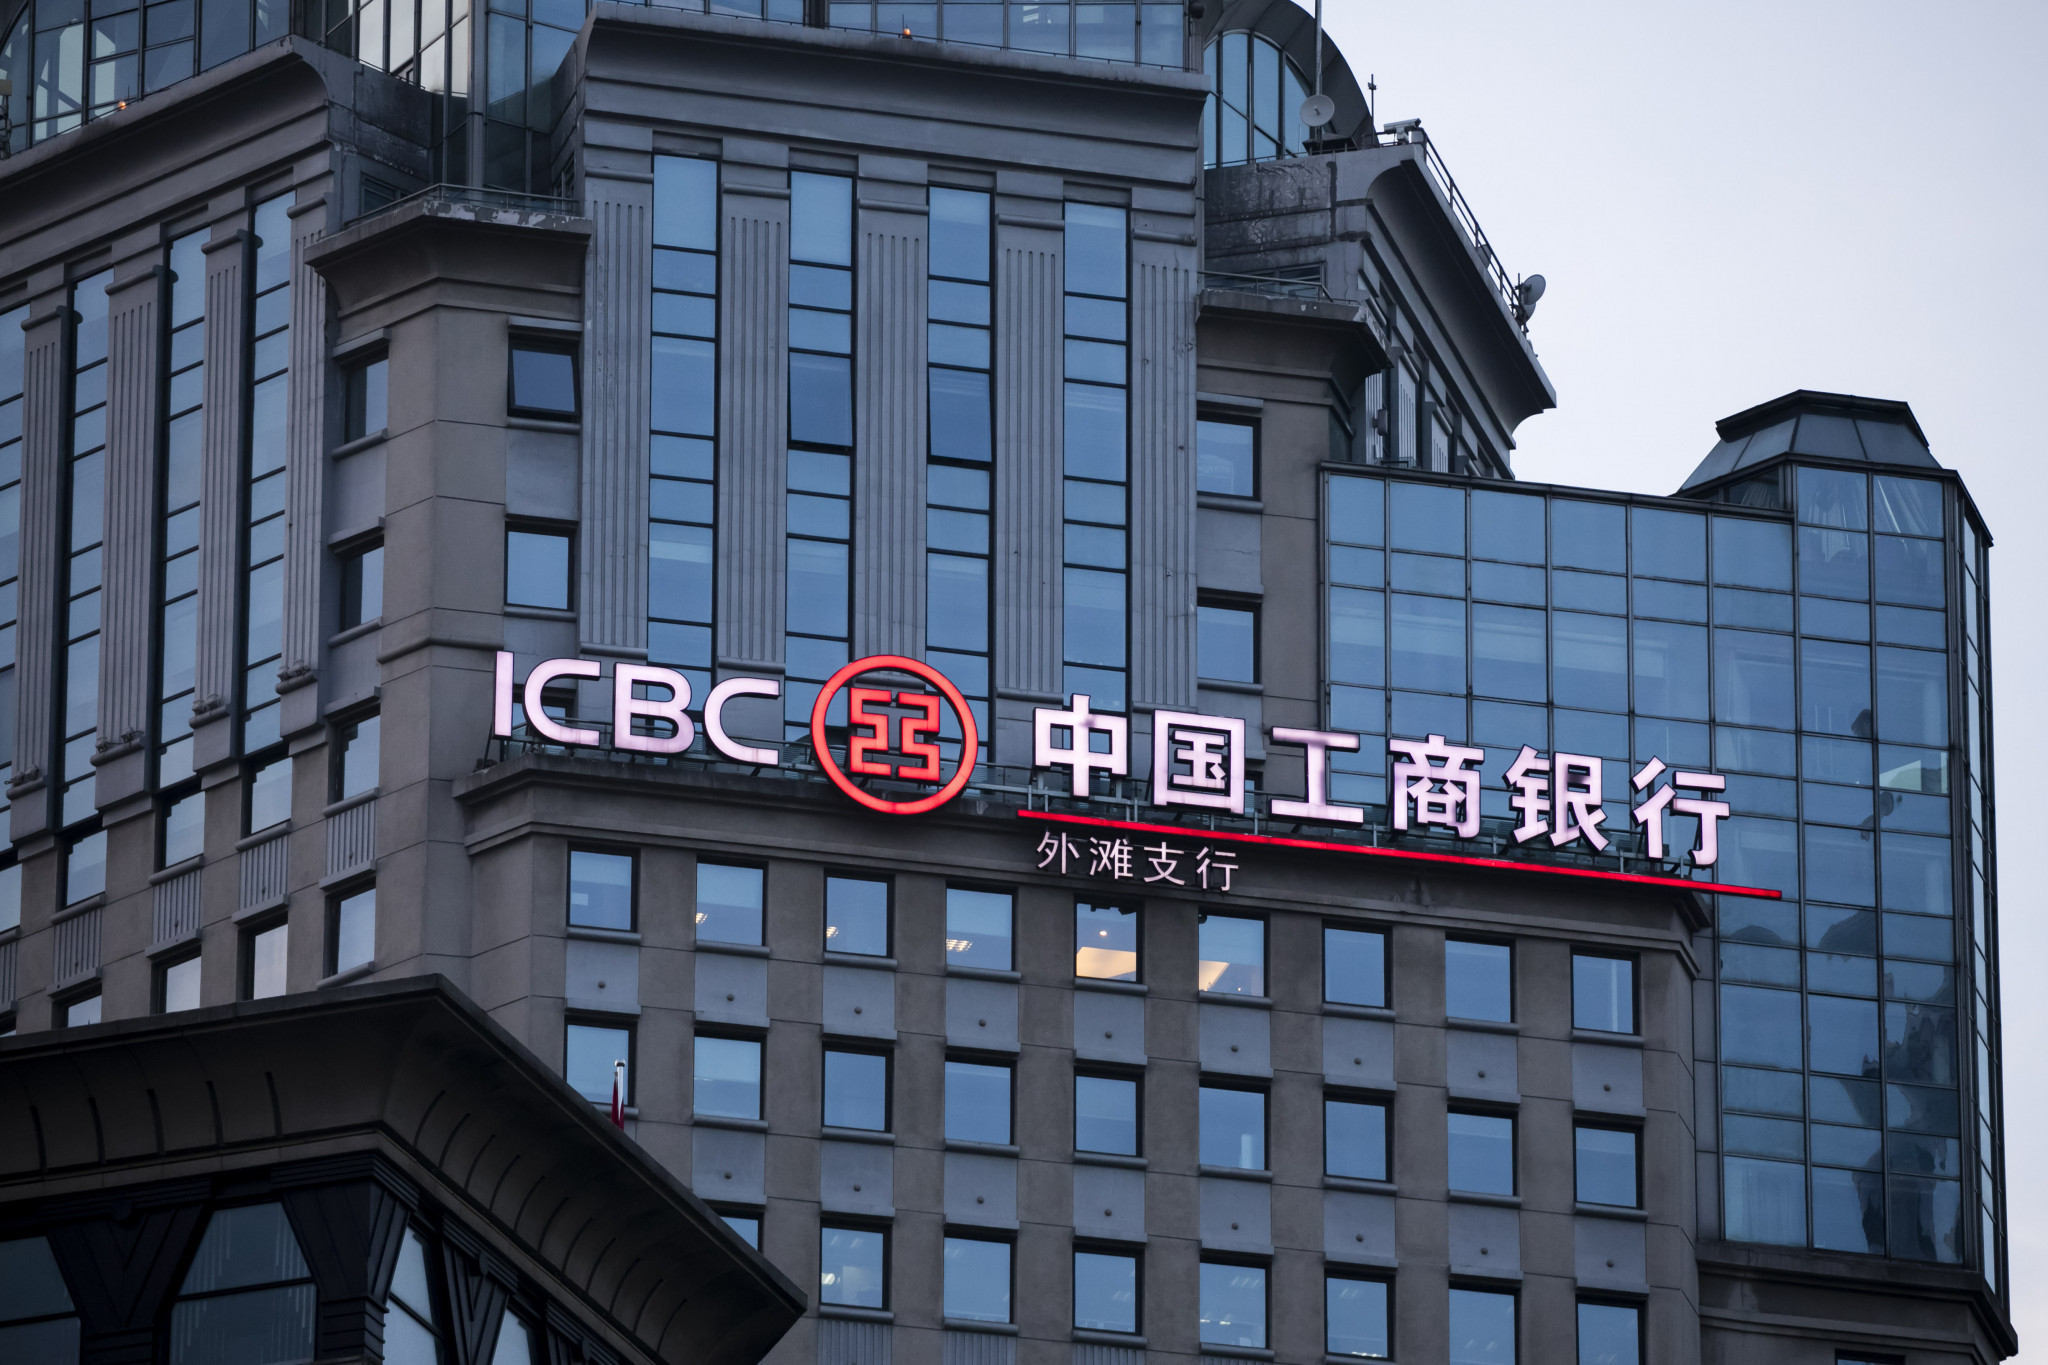 Cnaps bank of china. ICBC банк Китая. Индустриальный и коммерческий банк Китая. Industrial and commercial Bank of China (ICBC) банк. Банк Китая (Bank of China).